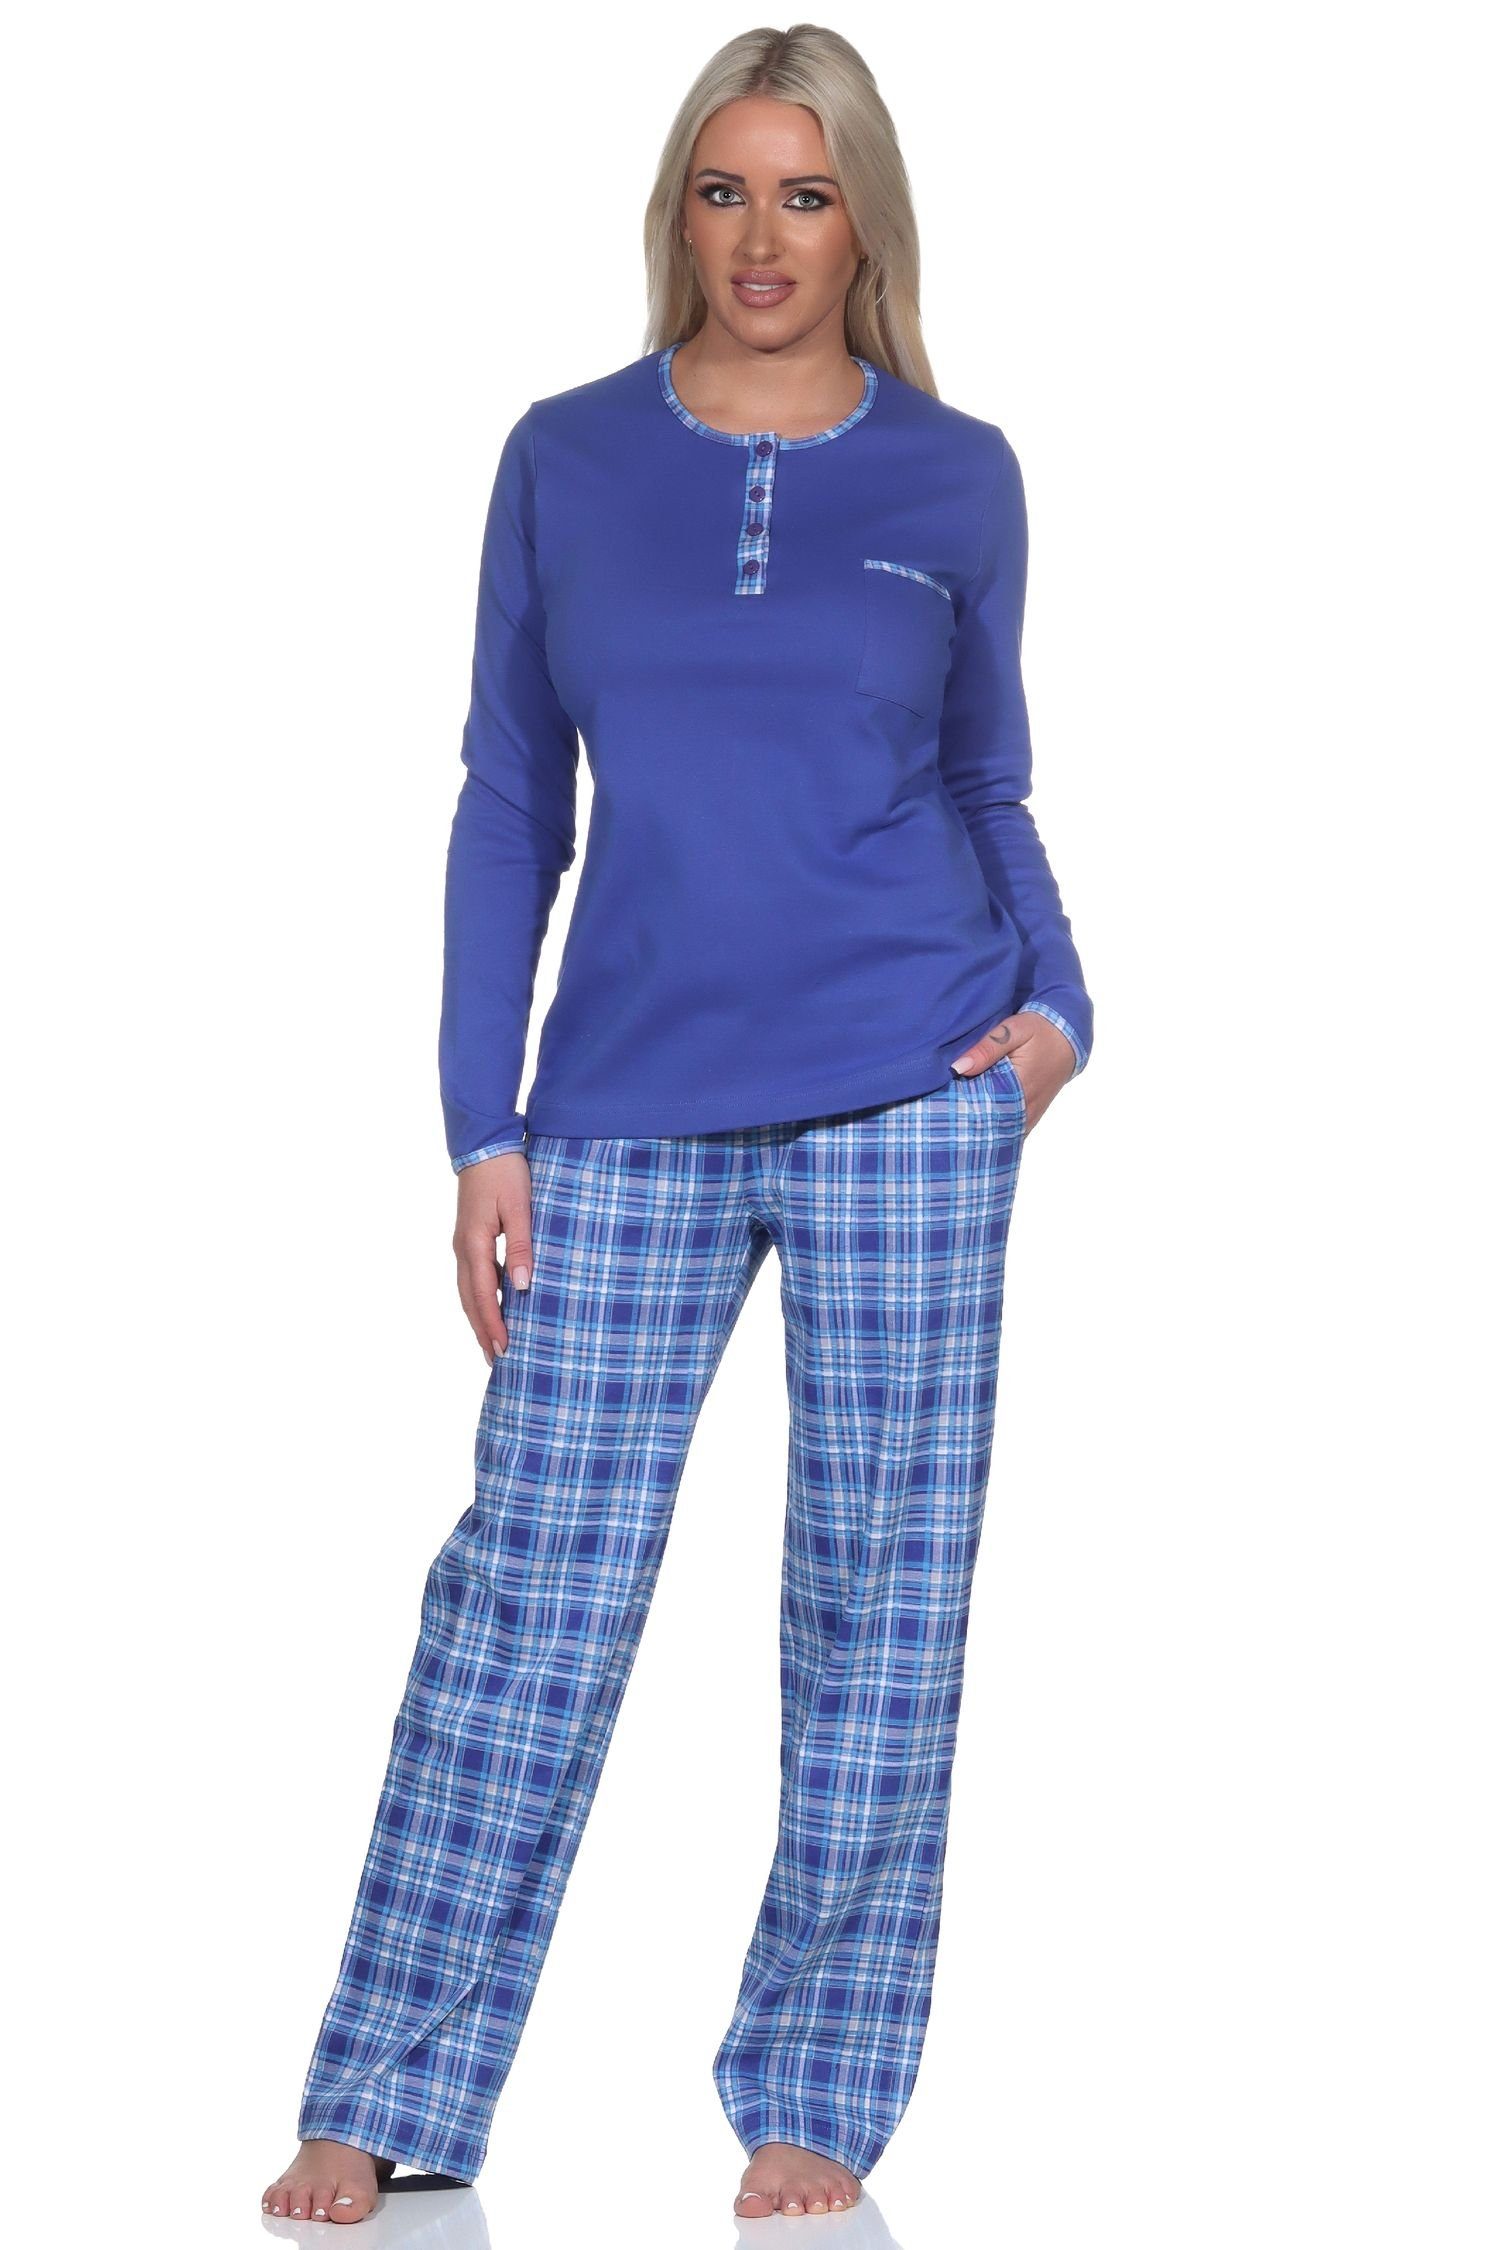 Hose Kuschel Pyjama Normann Damen Schlafanzug karierter in mit Qualität Interlock blau